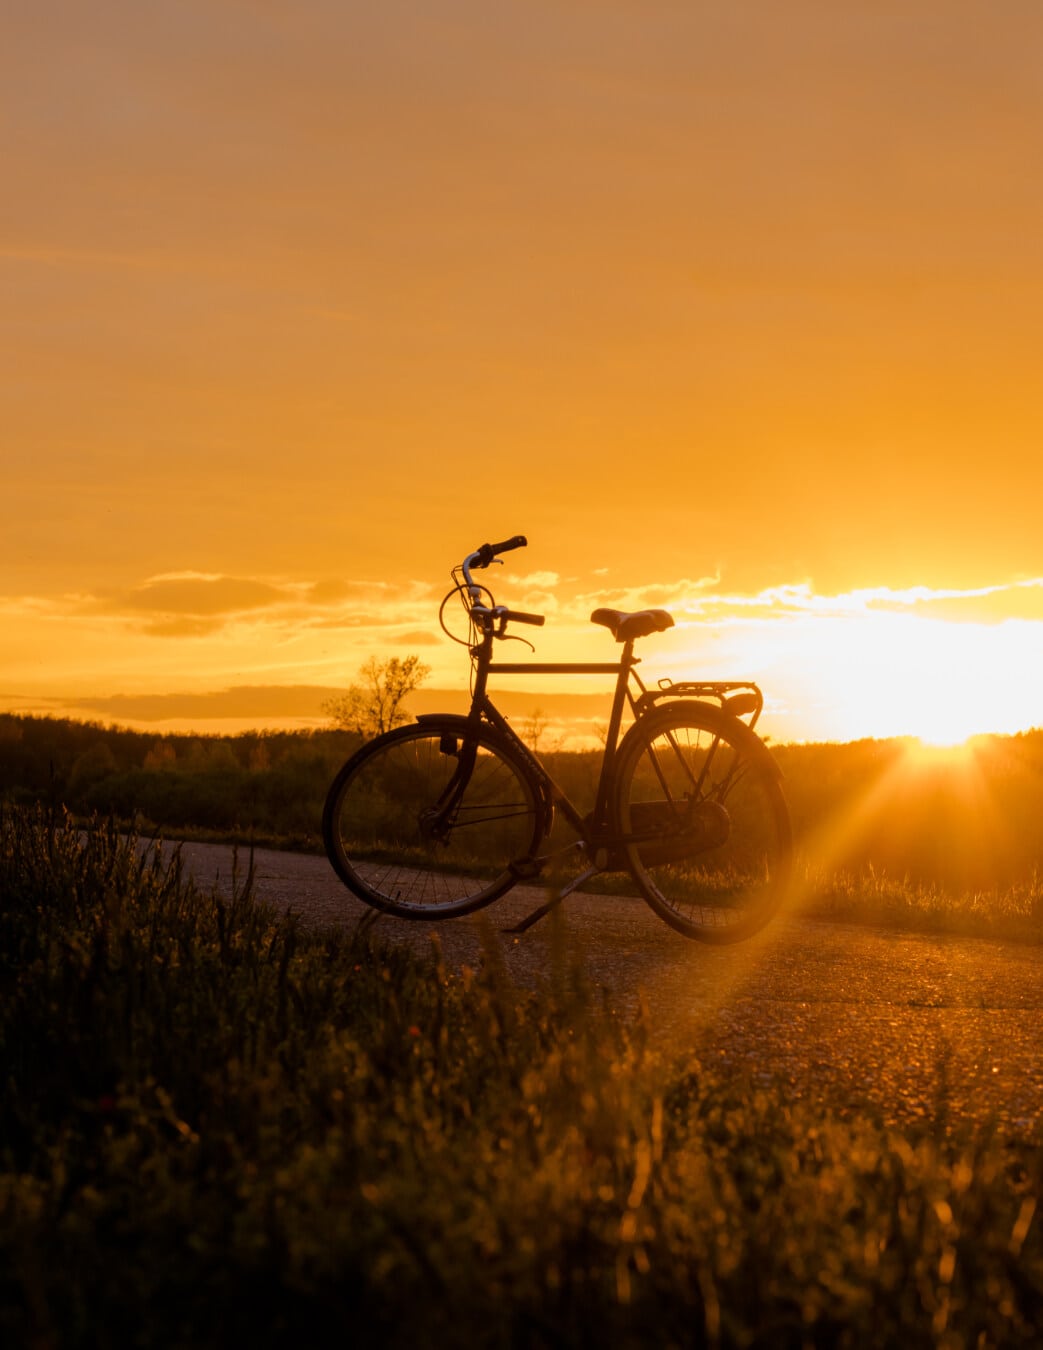 zonnestralen, zonsondergang, backlit, fiets, silhouet, middag, landschap, dageraad, zon, fiets